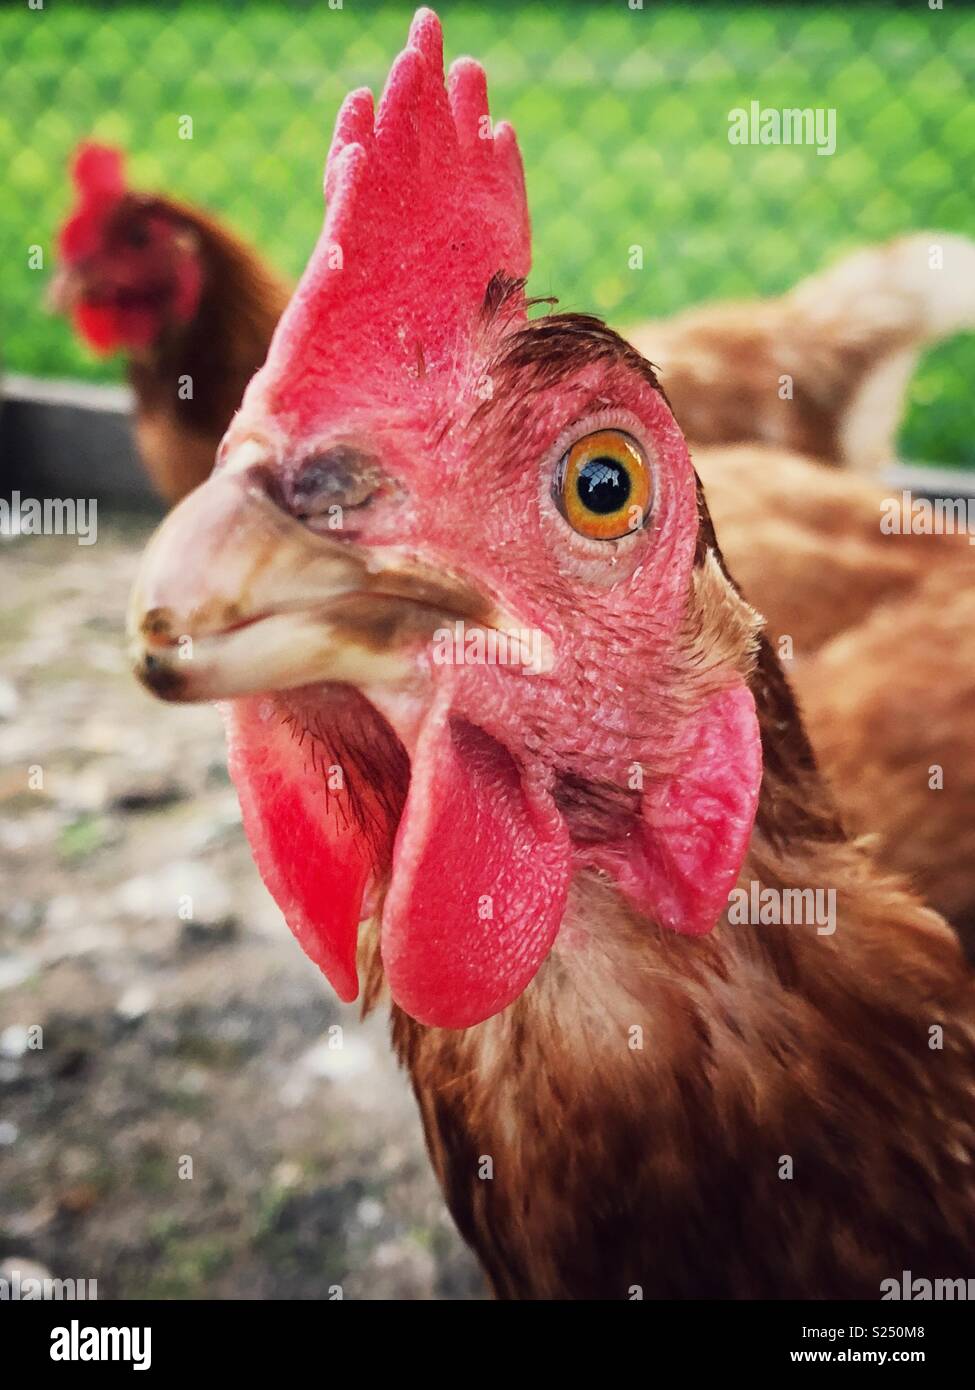 Closeup ritratto di Rhode Island red hen guardando la fotocamera Foto Stock